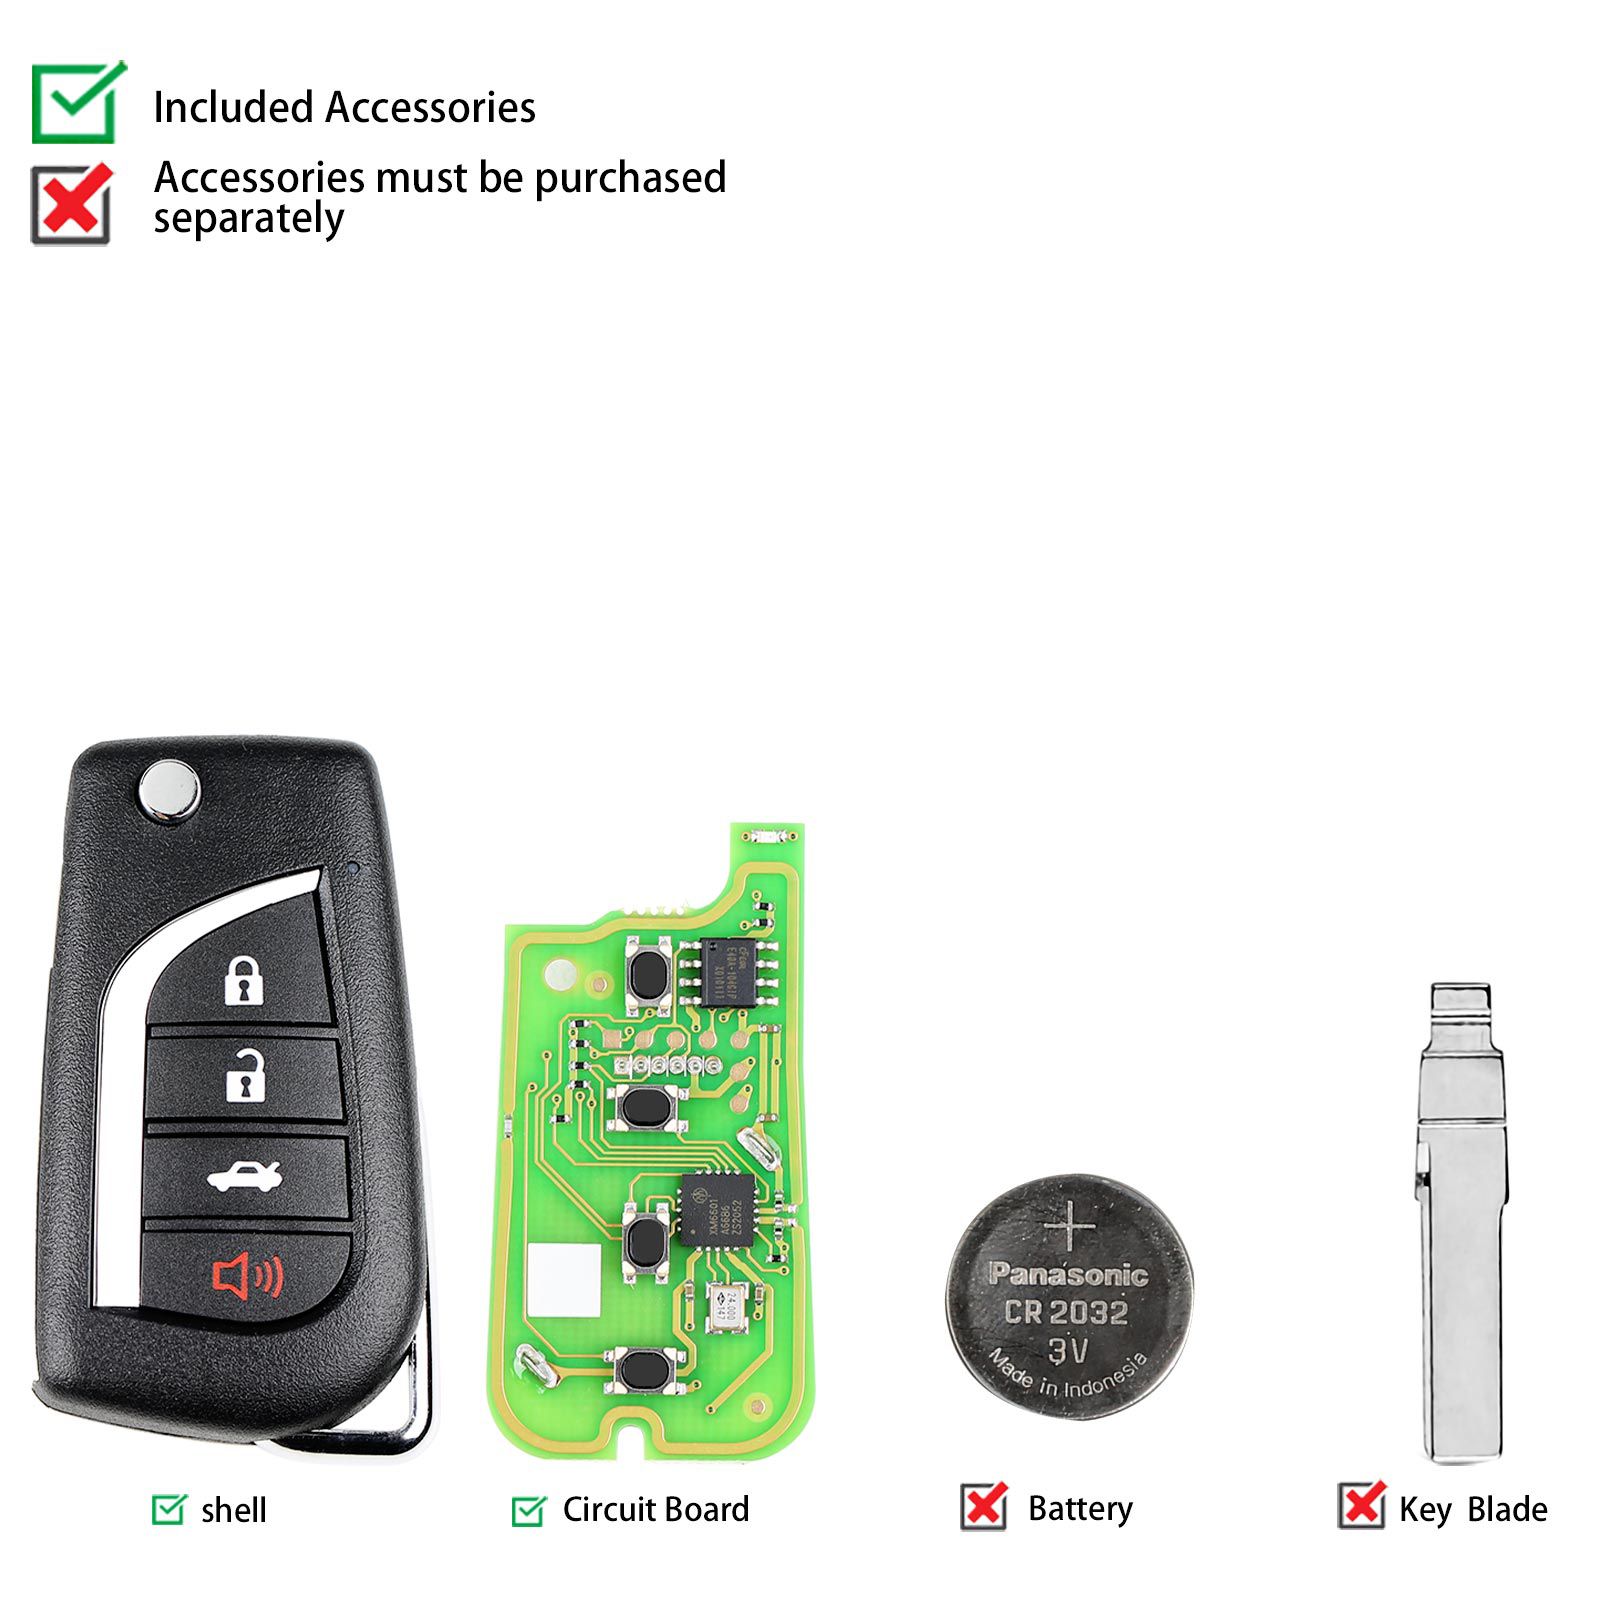 Xhorse xkto10en llave de control remoto por cable Toyota Fly 4 botones versión en inglés 5 piezas / lote